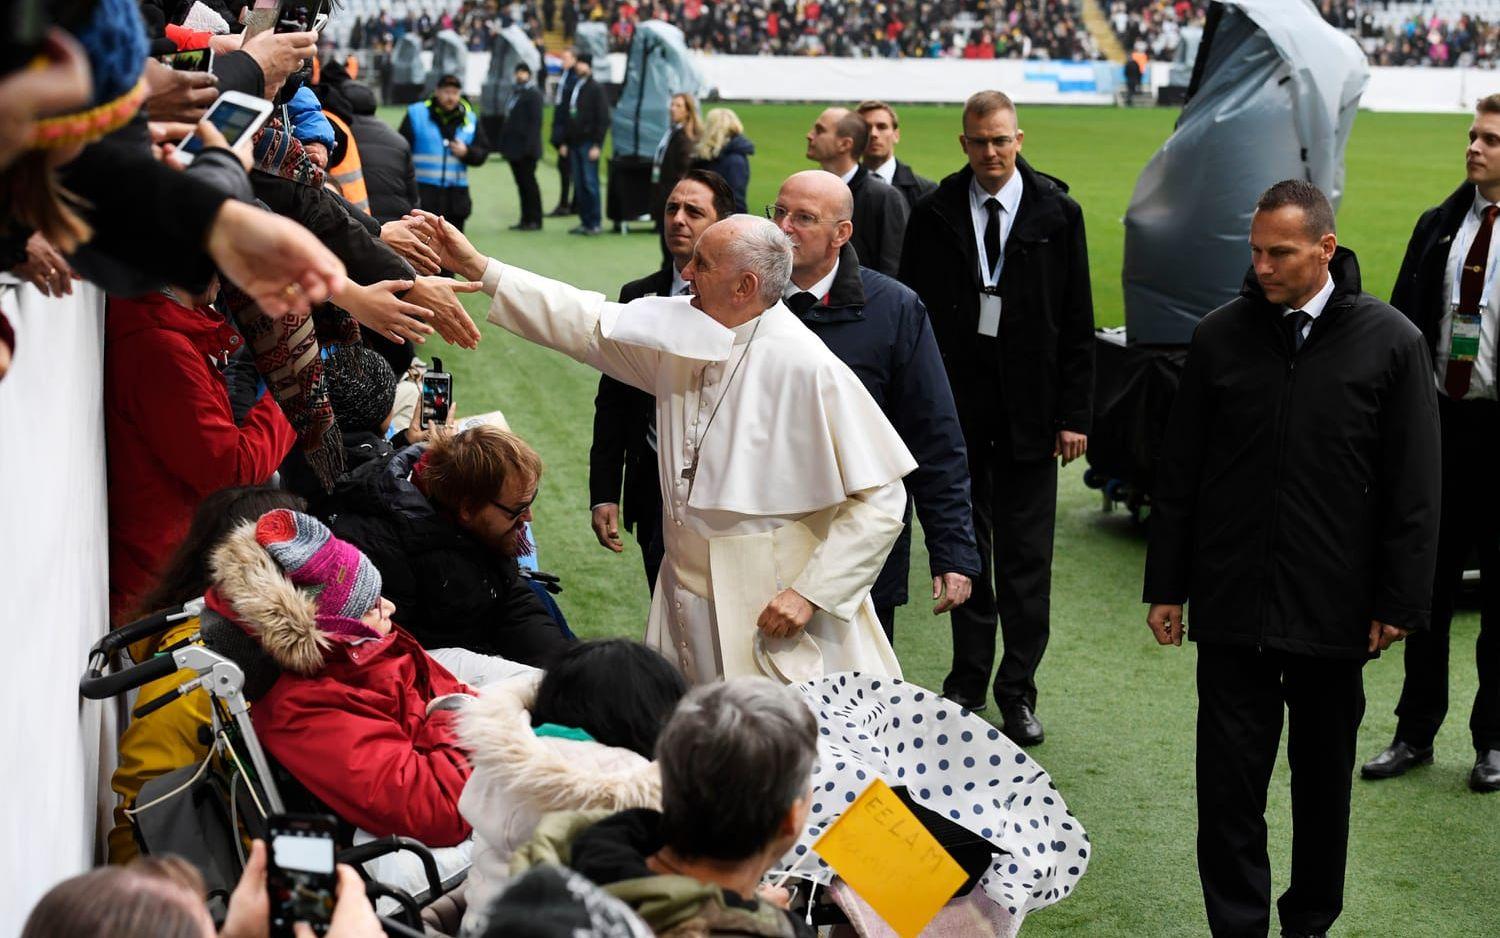 Påve Franciskus anländer till Swedbank arena inför den katolska mässan ska hållas under förmiddagen. Foto: Jonas Ekströmer / TT